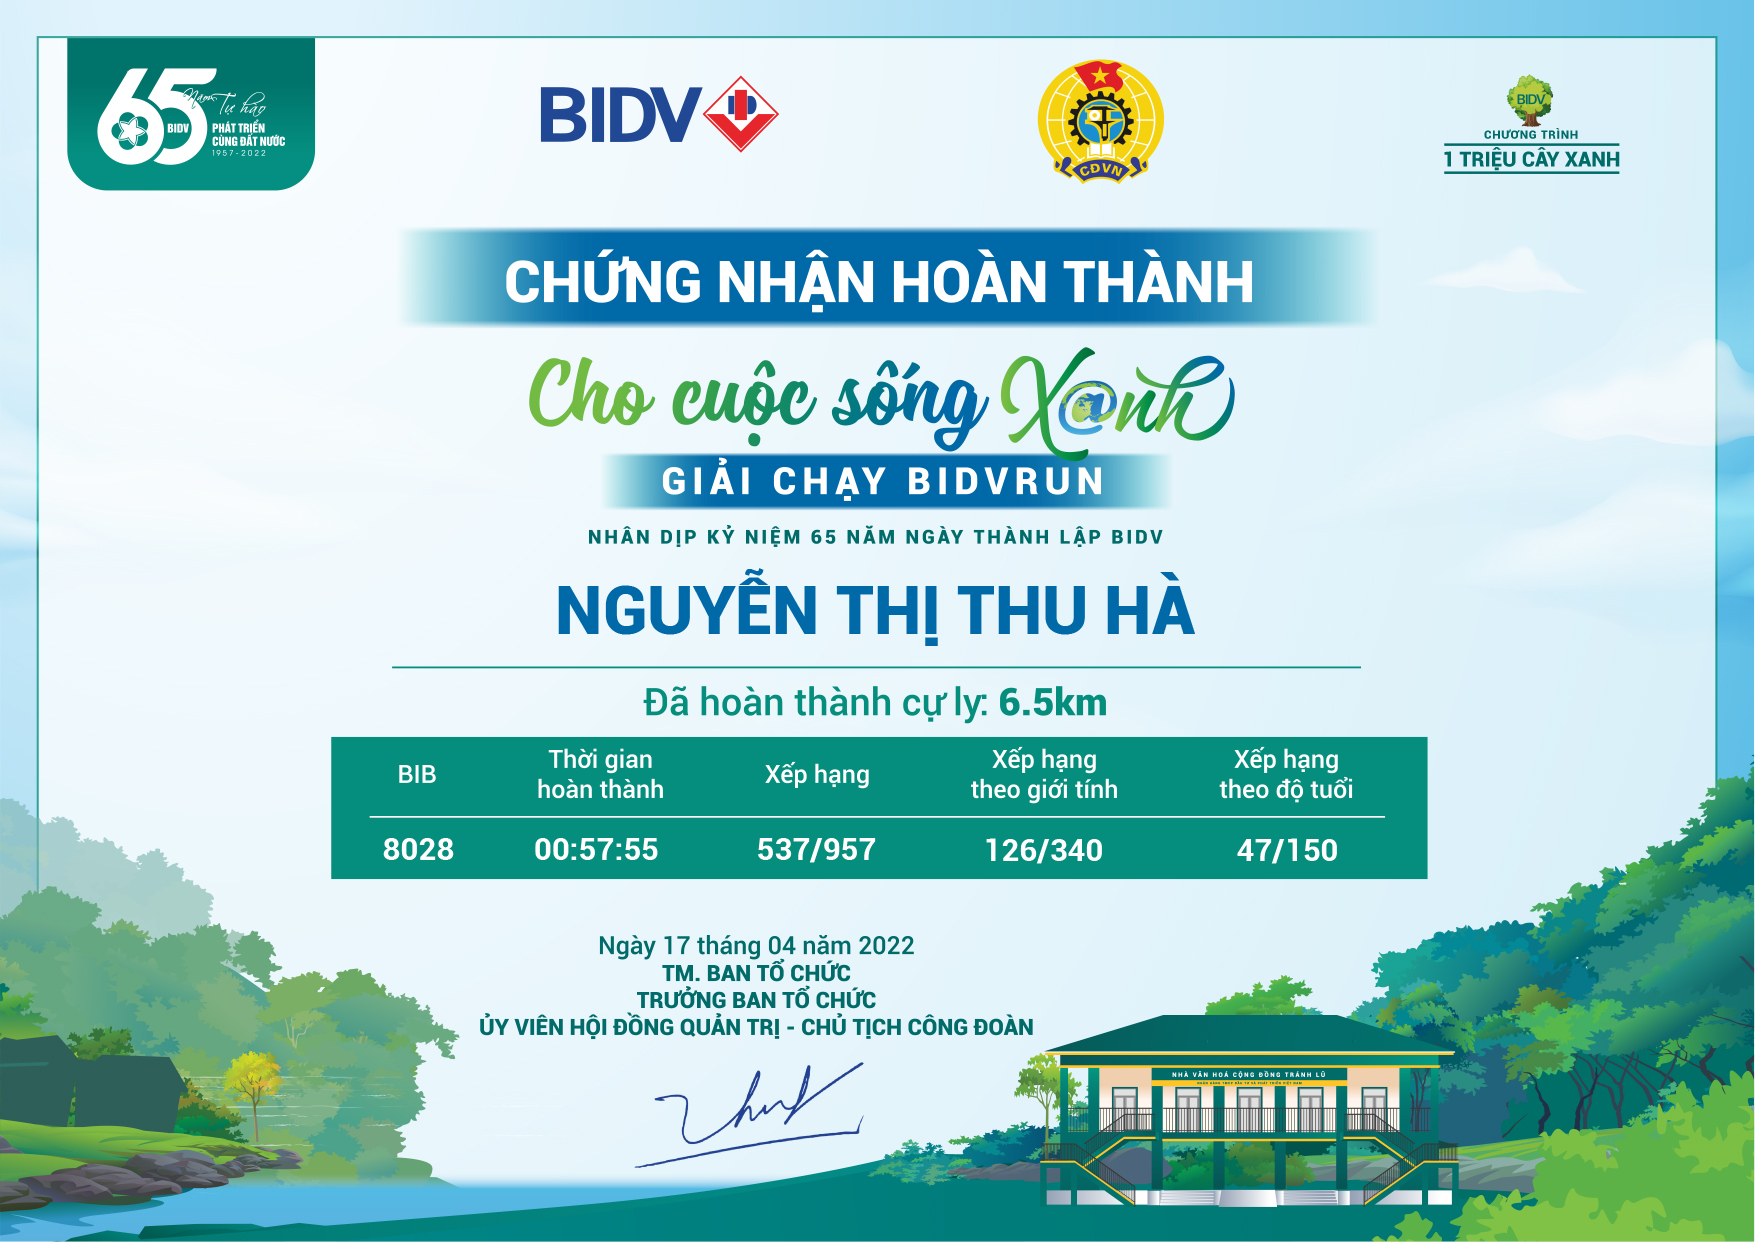 8028 - Nguyễn Thị Thu Hà